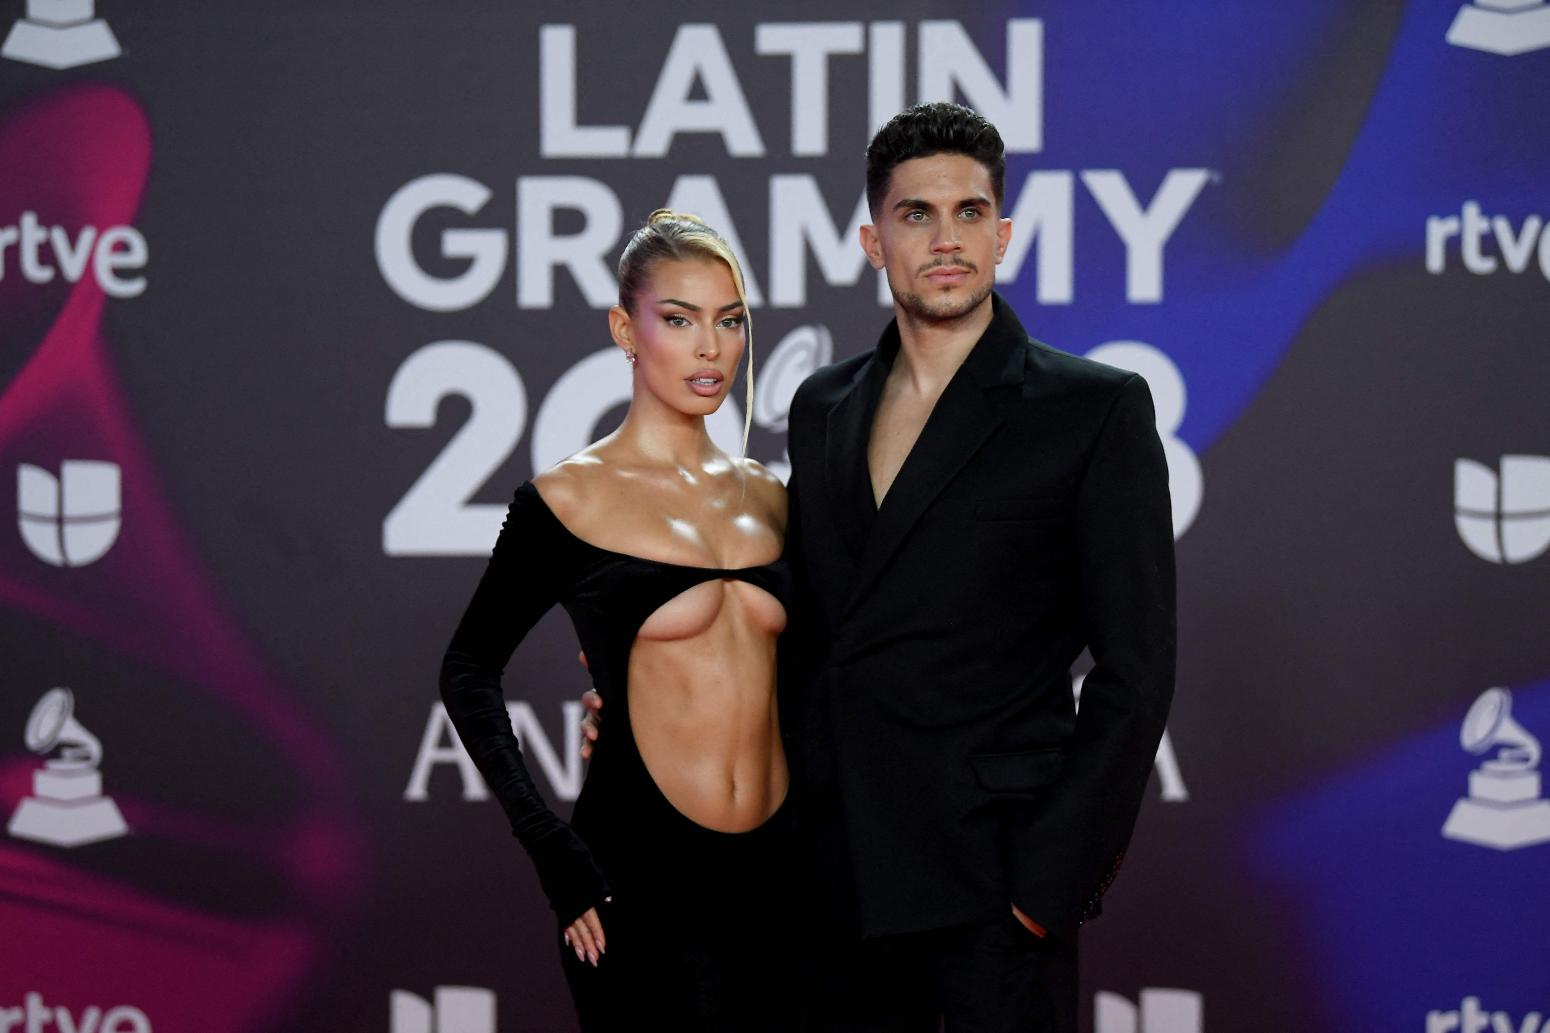 Η σούπερ σέξι εμφάνιση της συντρόφου του Μπάρτρα στα Latin Grammy